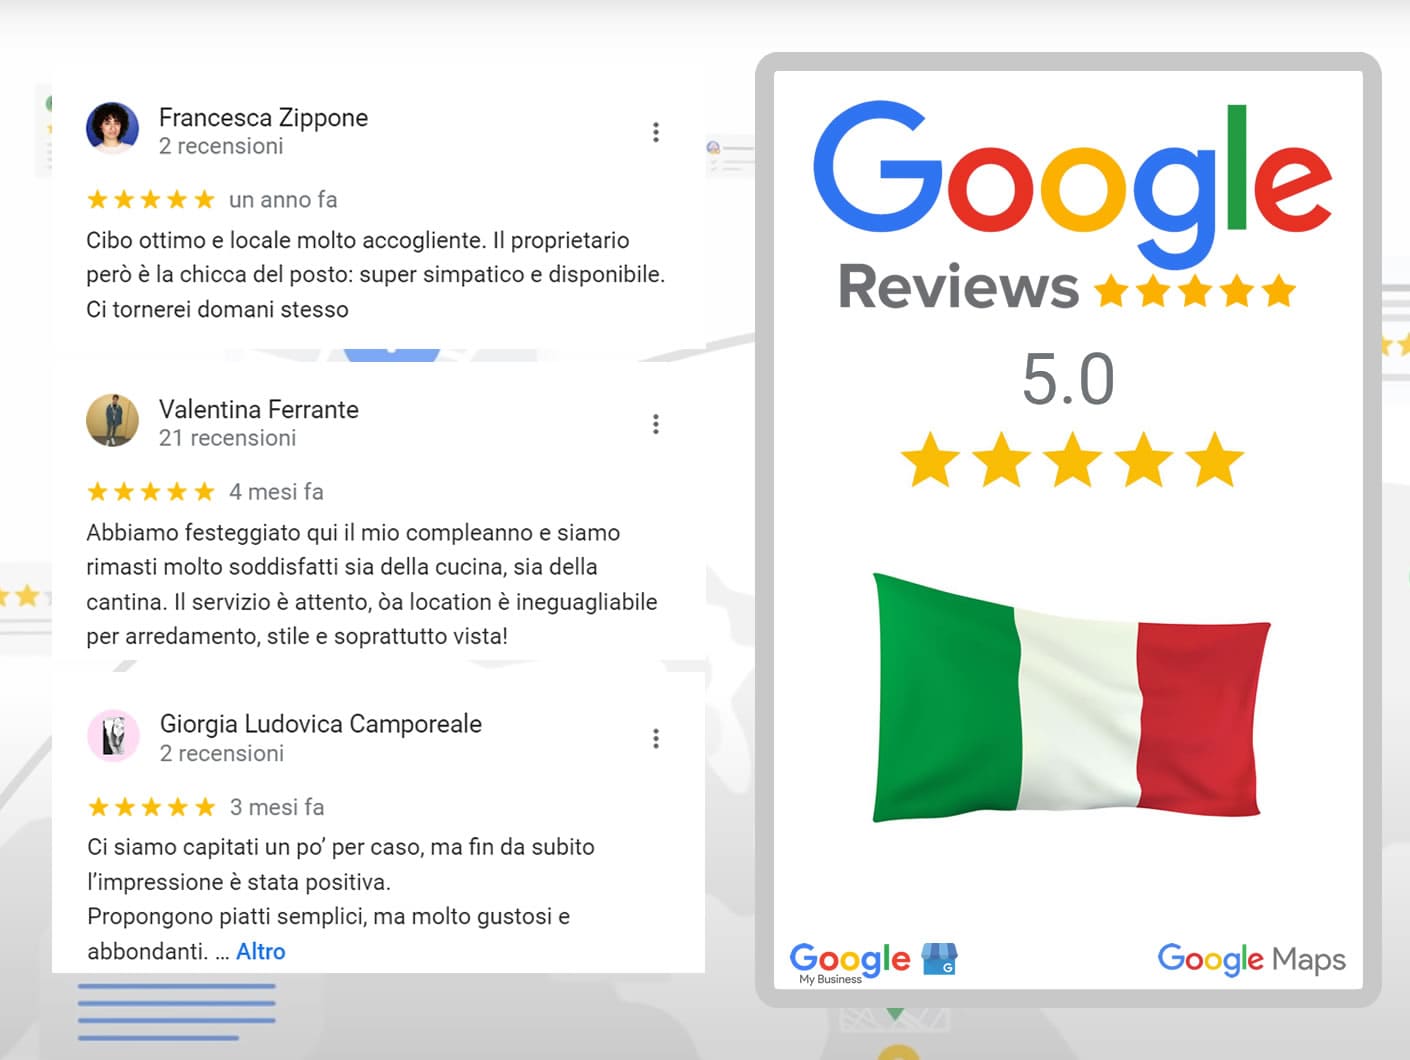 Comprar reseñas de Google en italiano - Aumente su reputación online en Italia